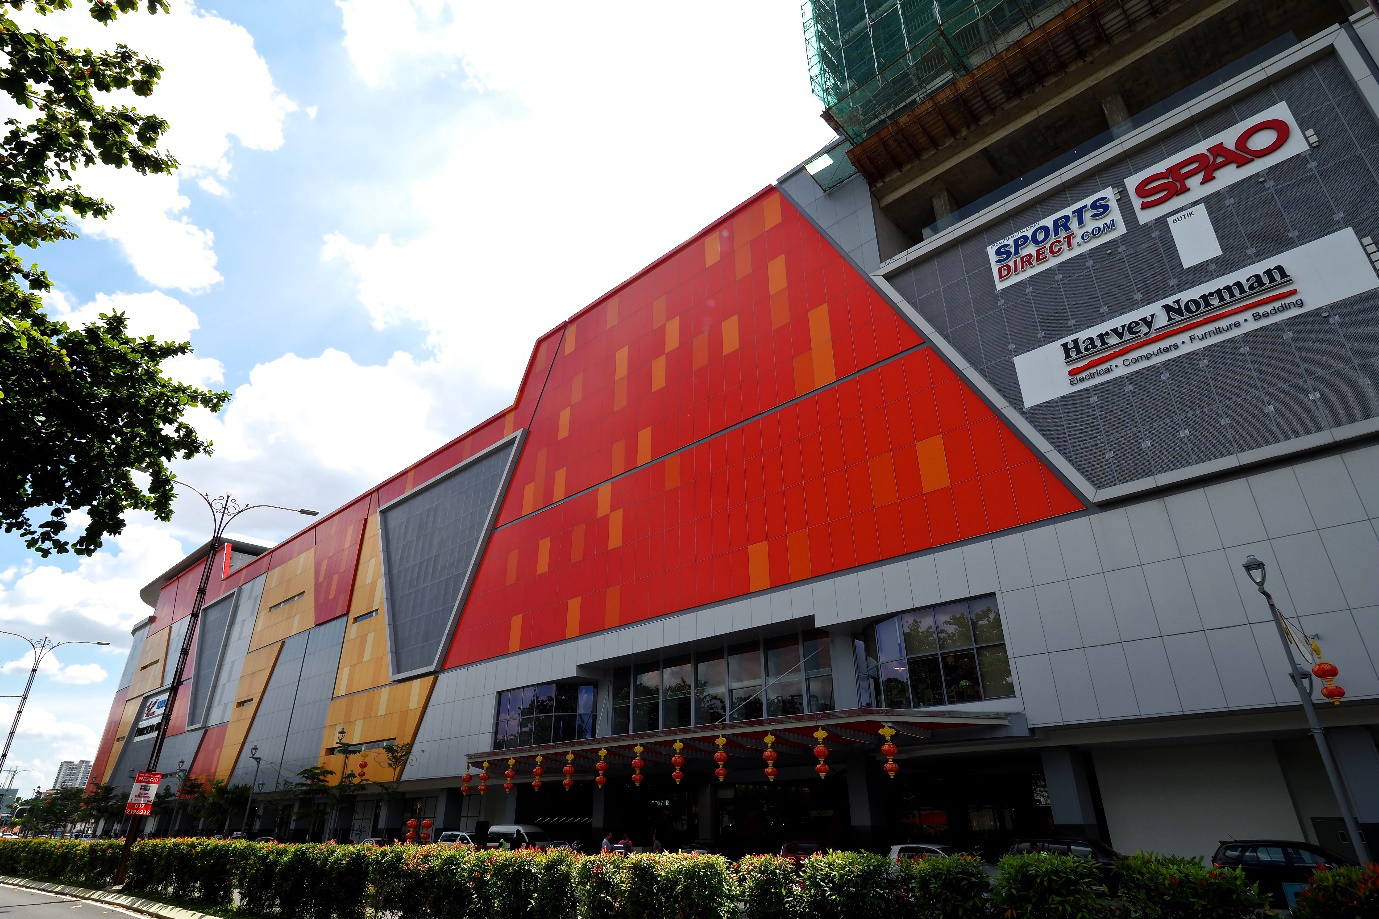 Sunway Velocity Mall, Kuala Lumpur, Malaysia